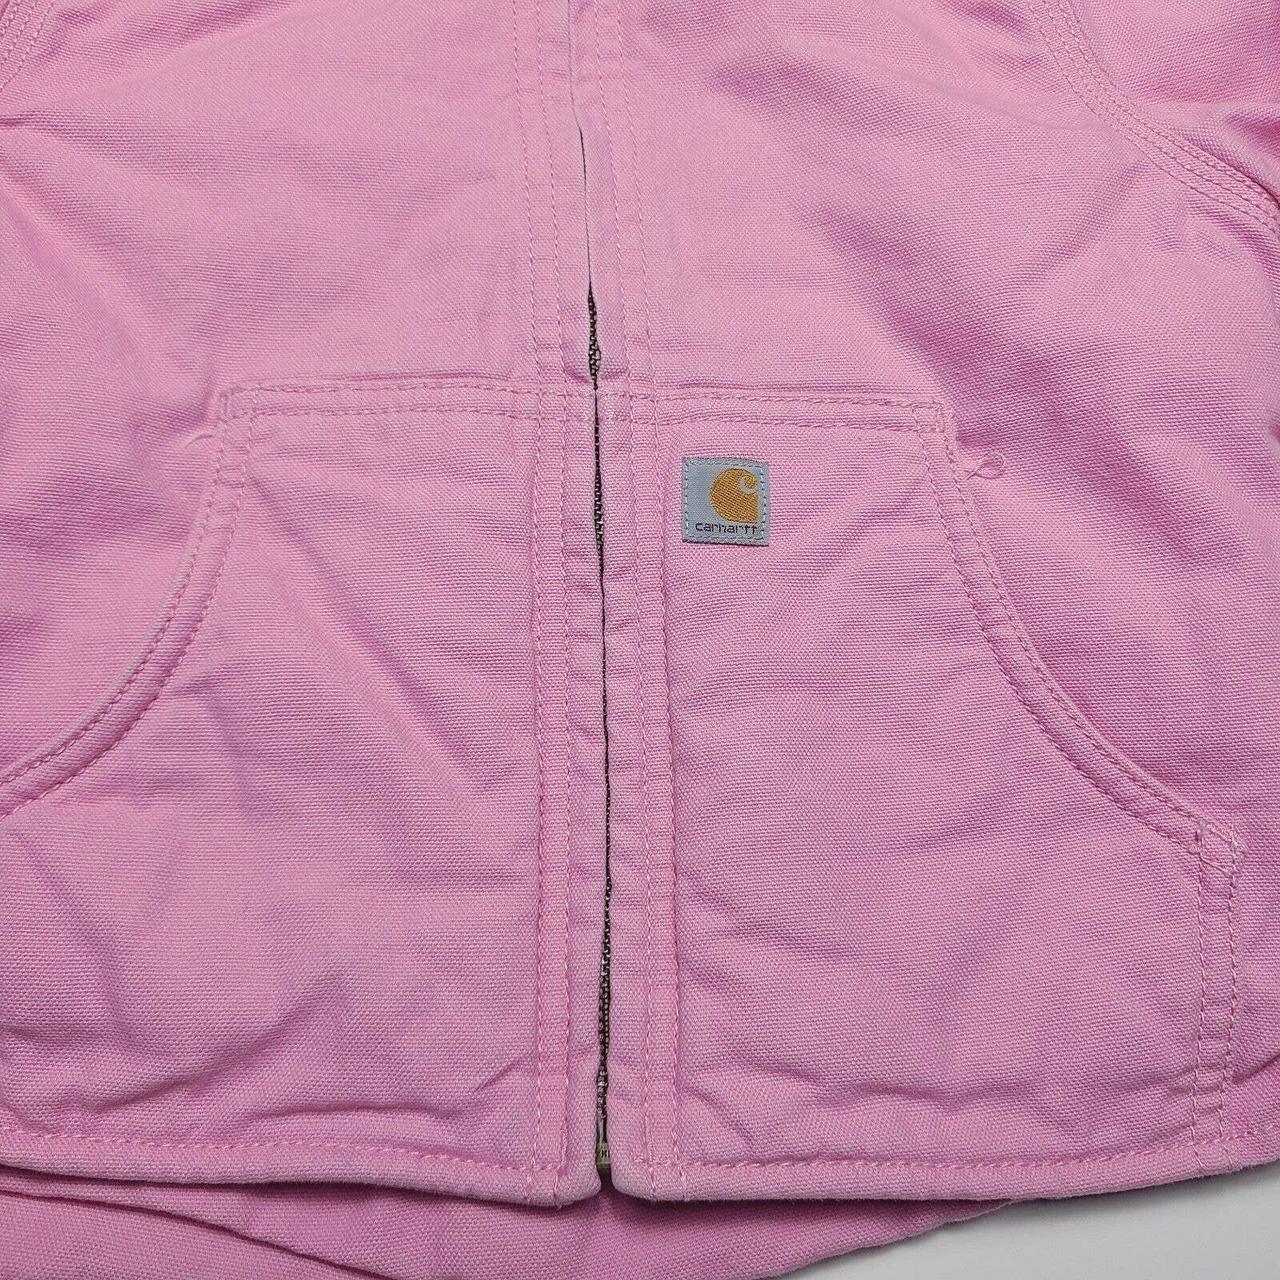 Carhartt Pink Duck Canvas Coat Kids Girls Size XXS... - Depop